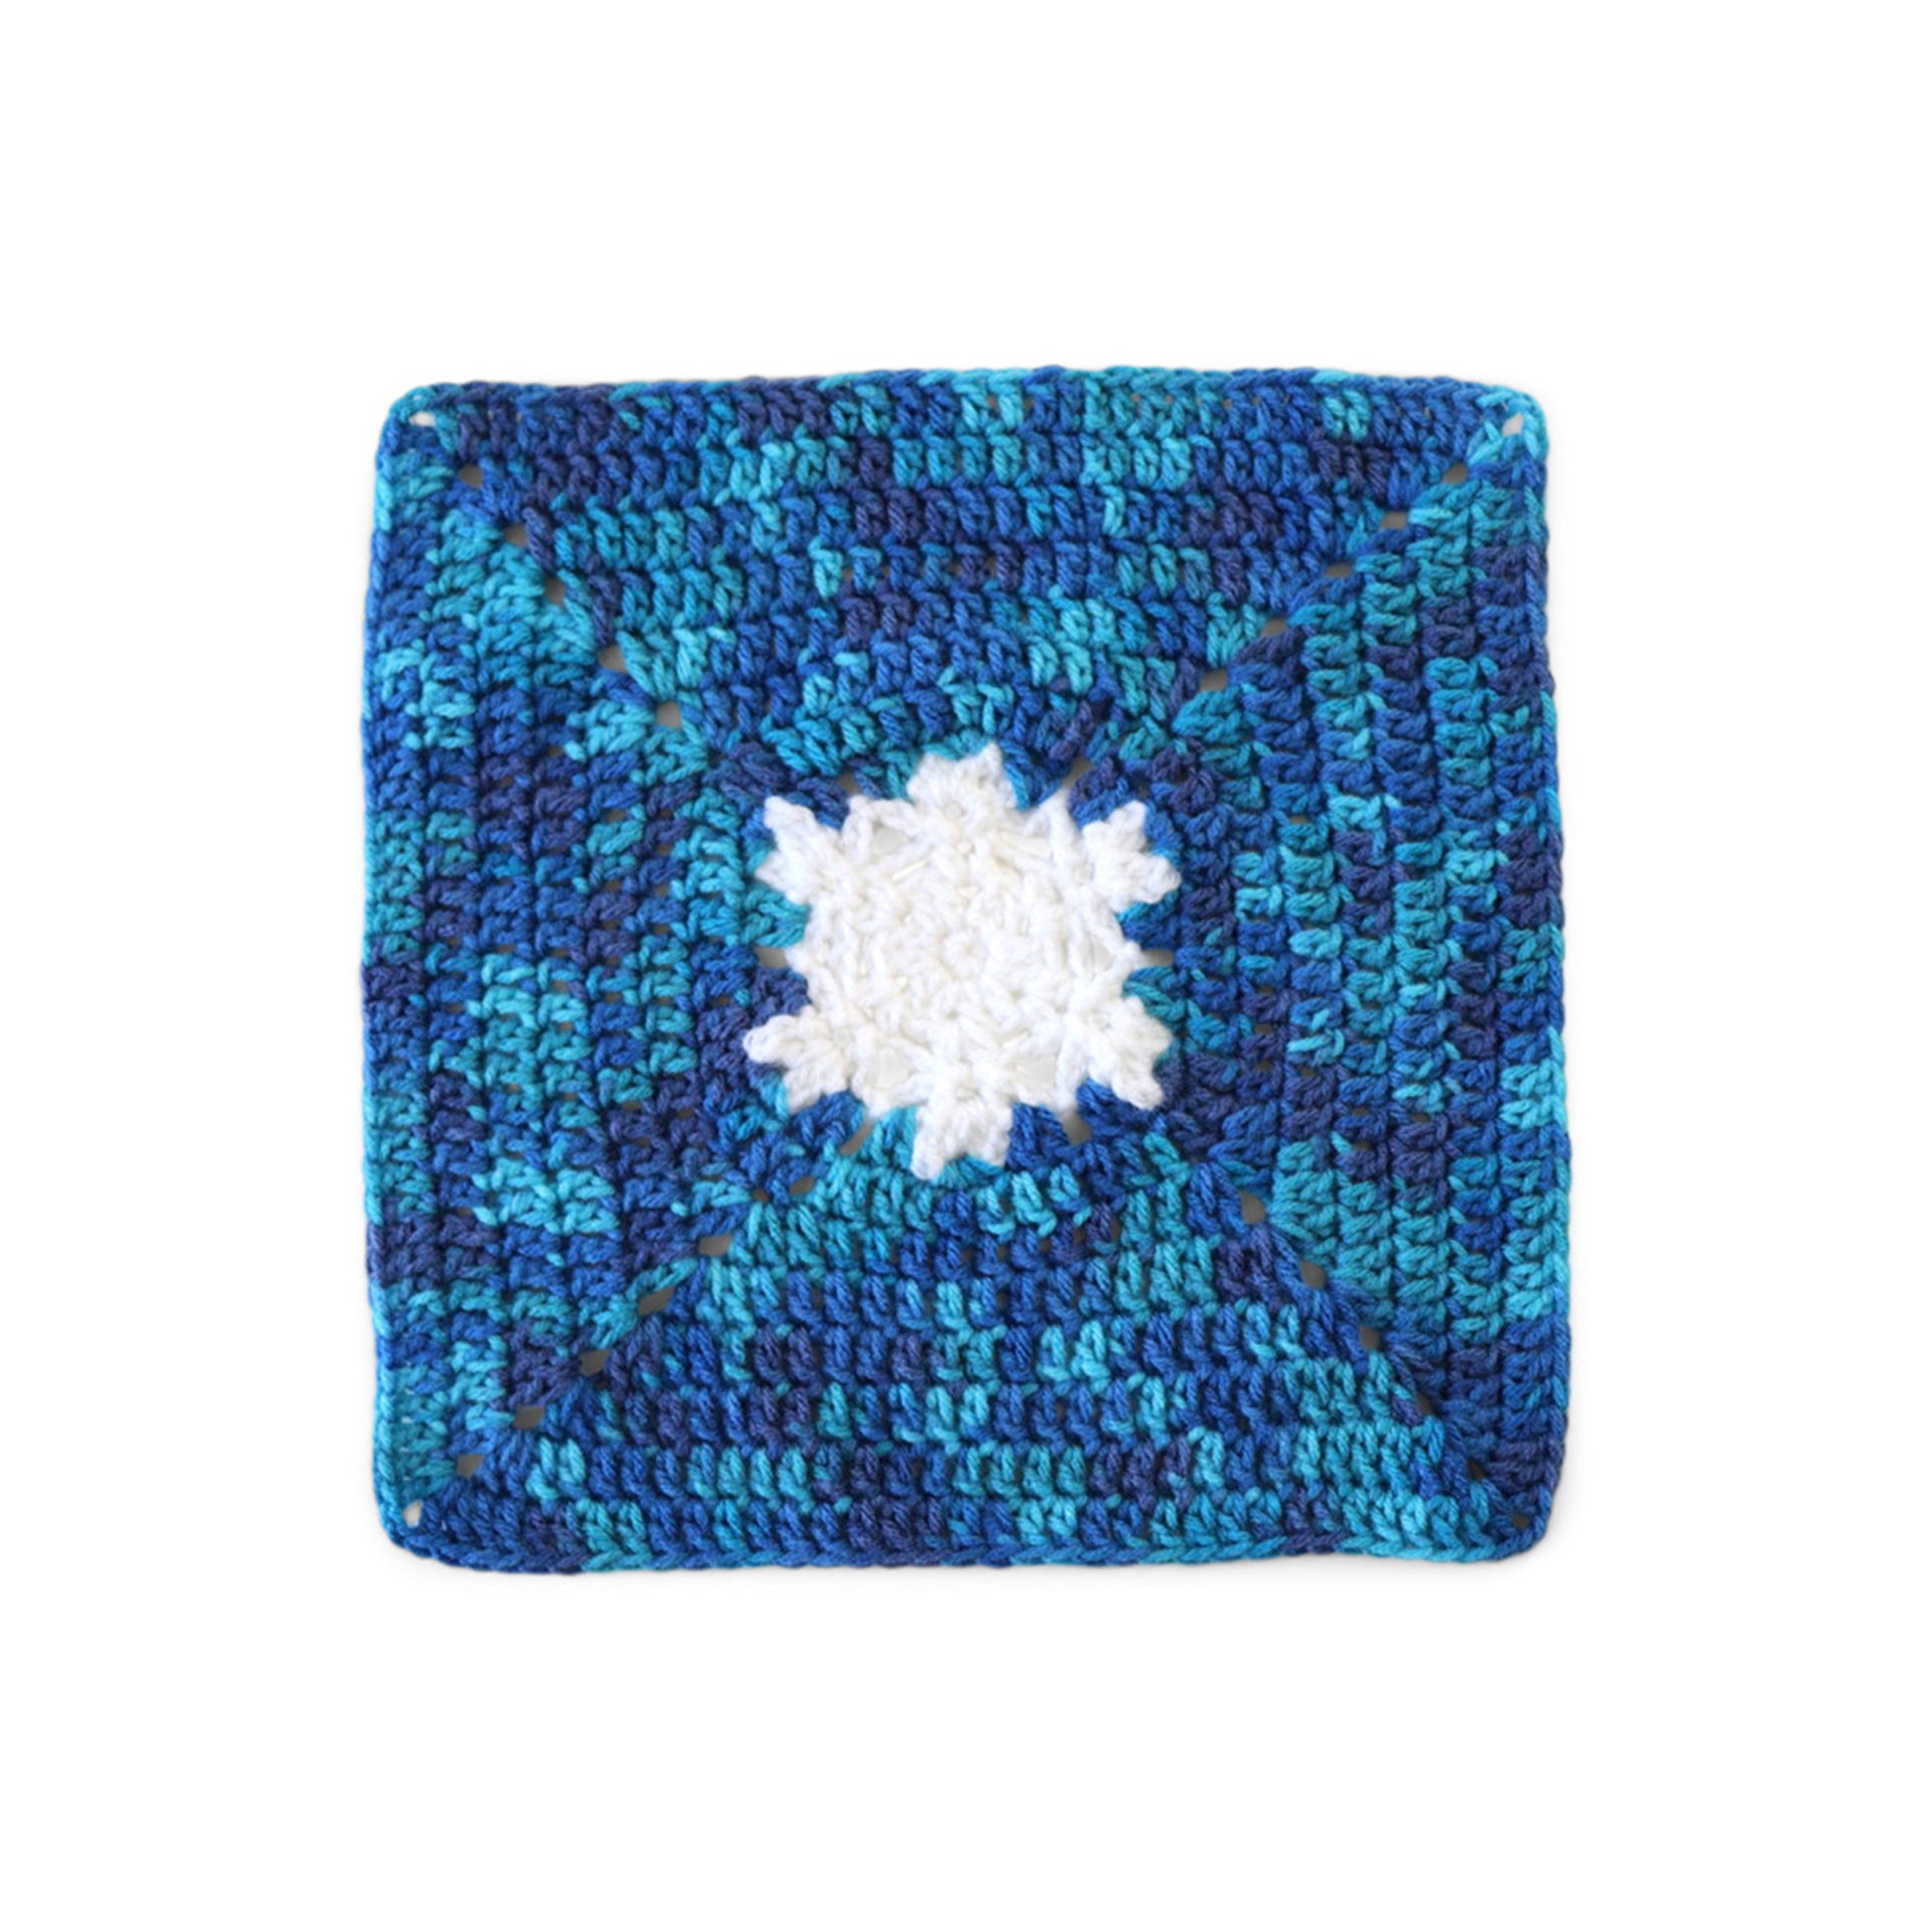 Free Red Heart Crochet Stitch in Season Snowflake Blanket Pattern